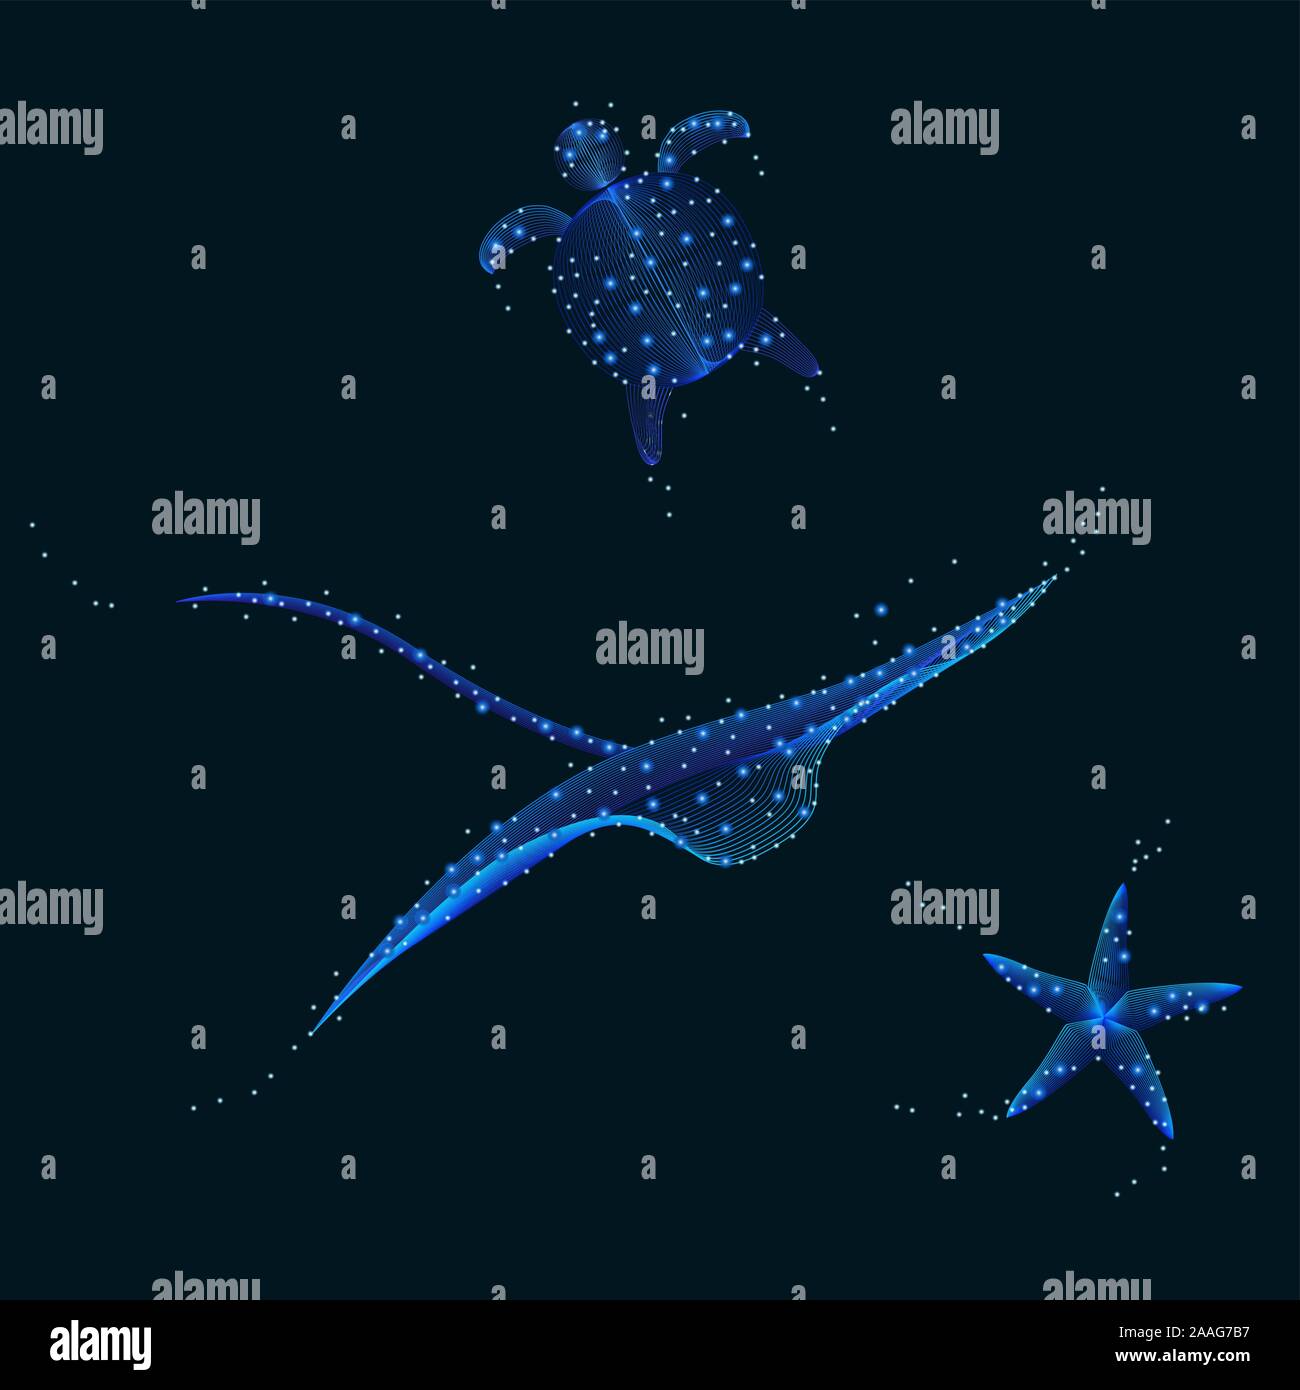 Abstract Manta Ray Turtle Starfish nuoto sott'acqua con bolle e galaxy stelle - contiene miscele Illustrazione Vettoriale